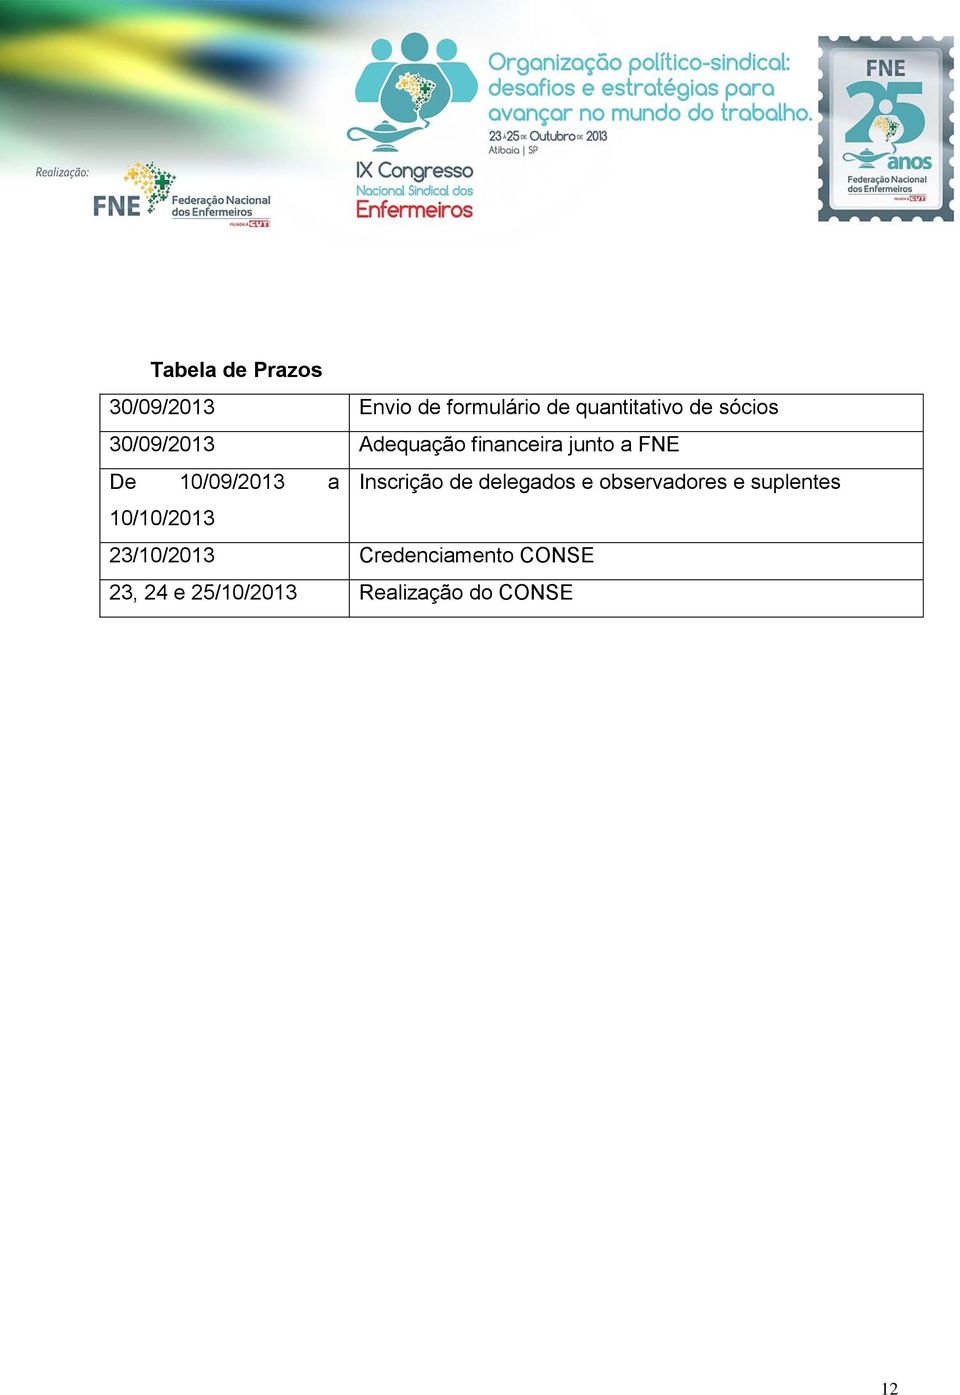 Inscrição de delegados e observadores e suplentes 10/10/2013